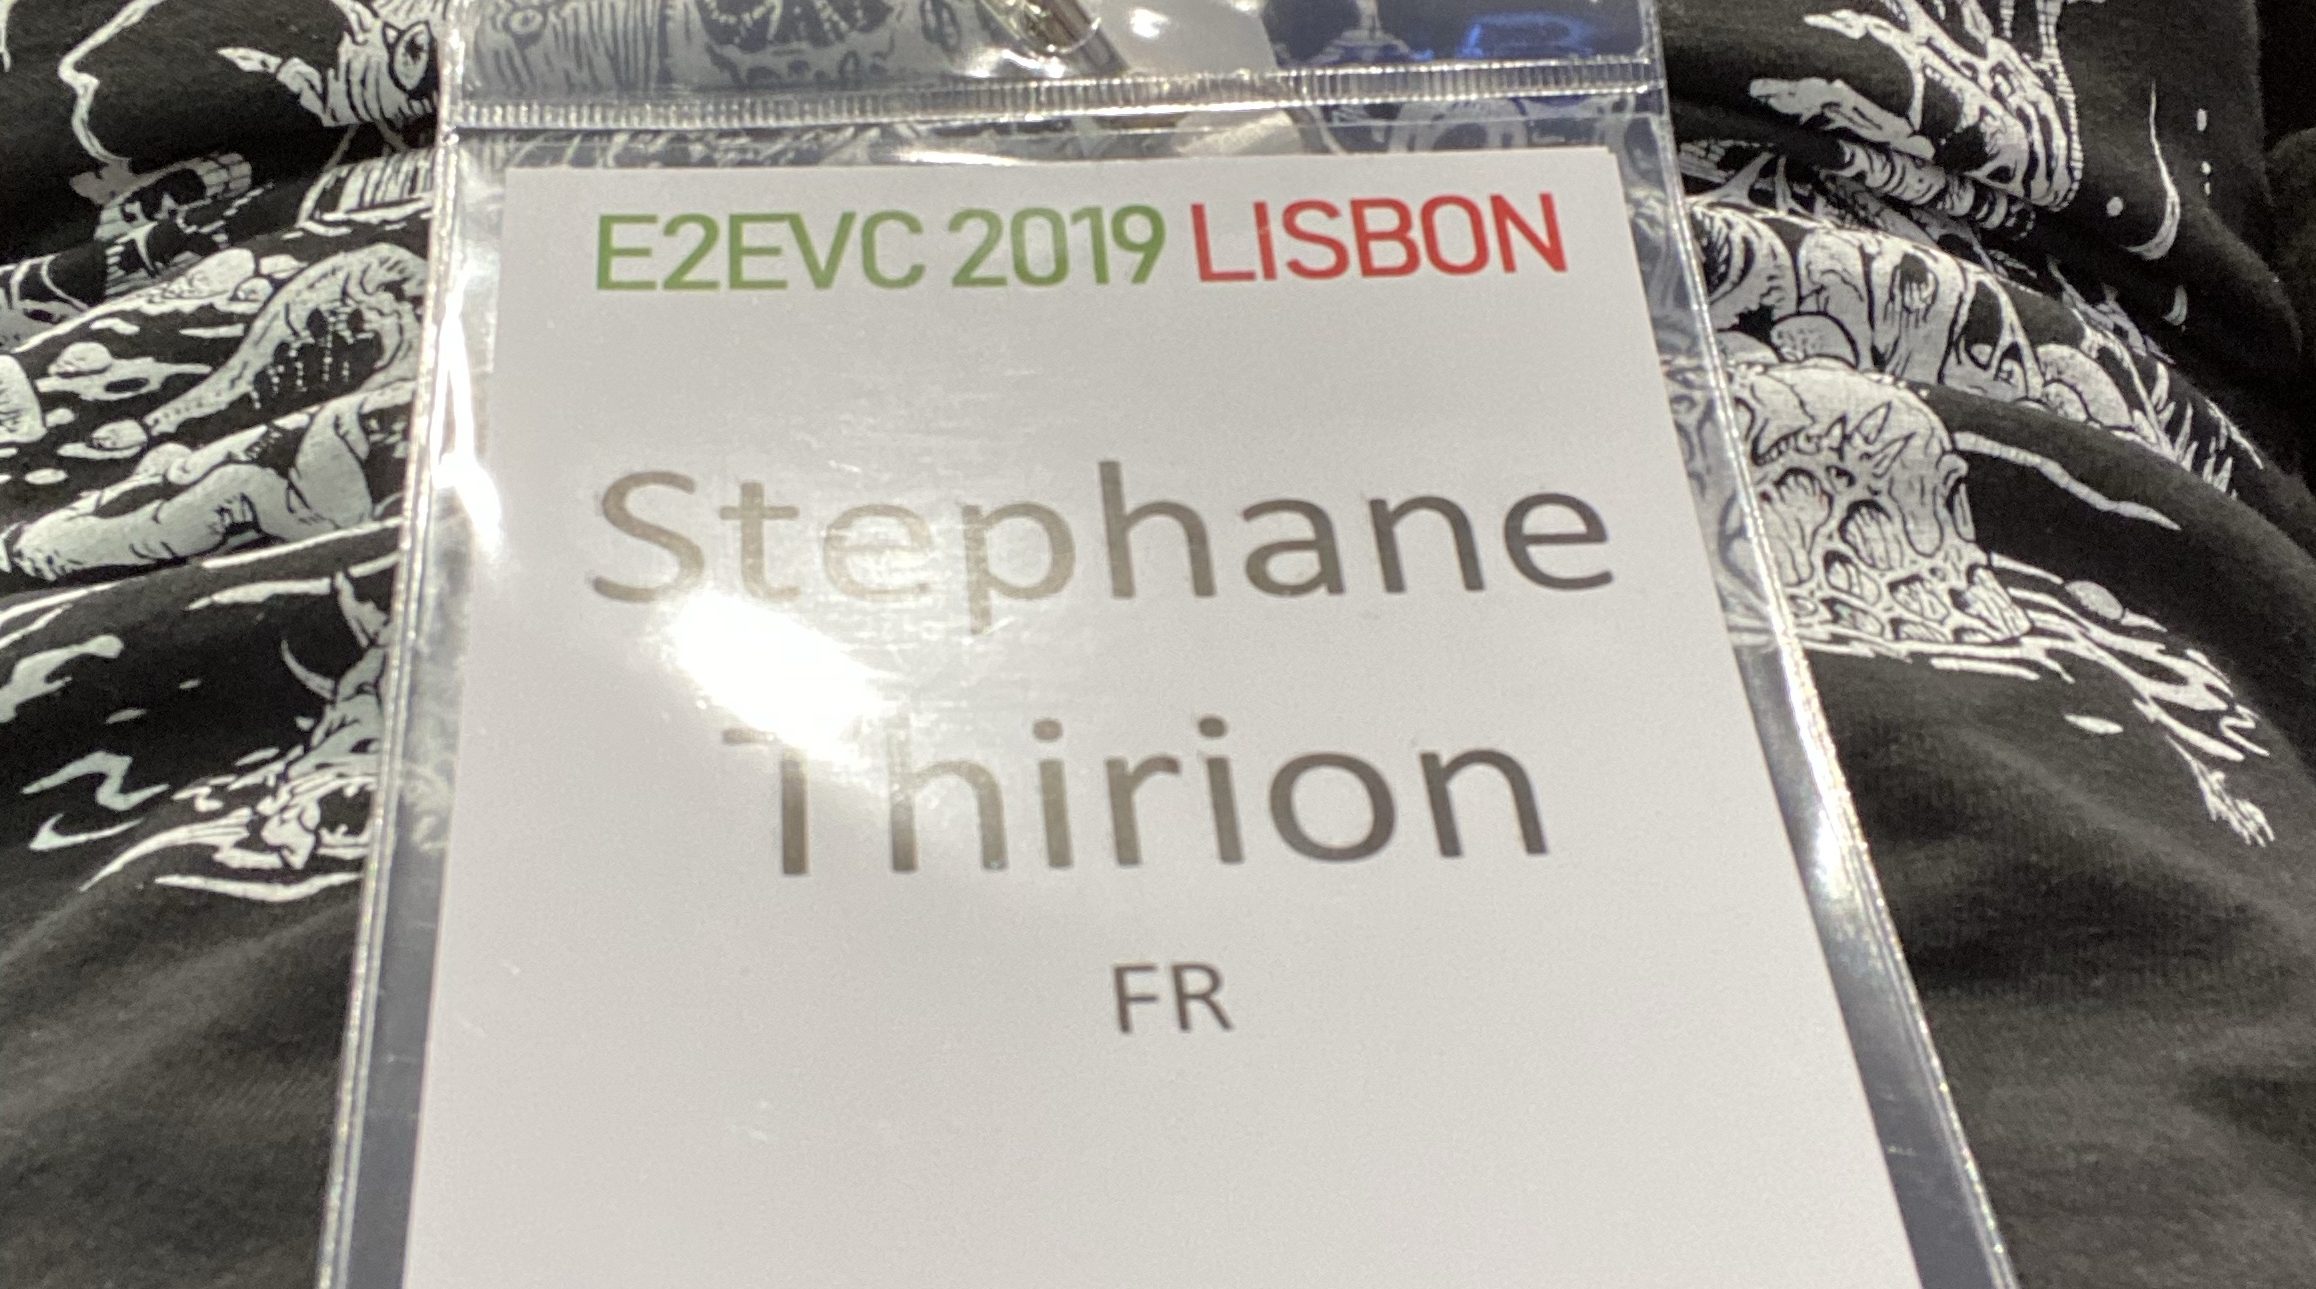 E2Evc Lisboa November 2019